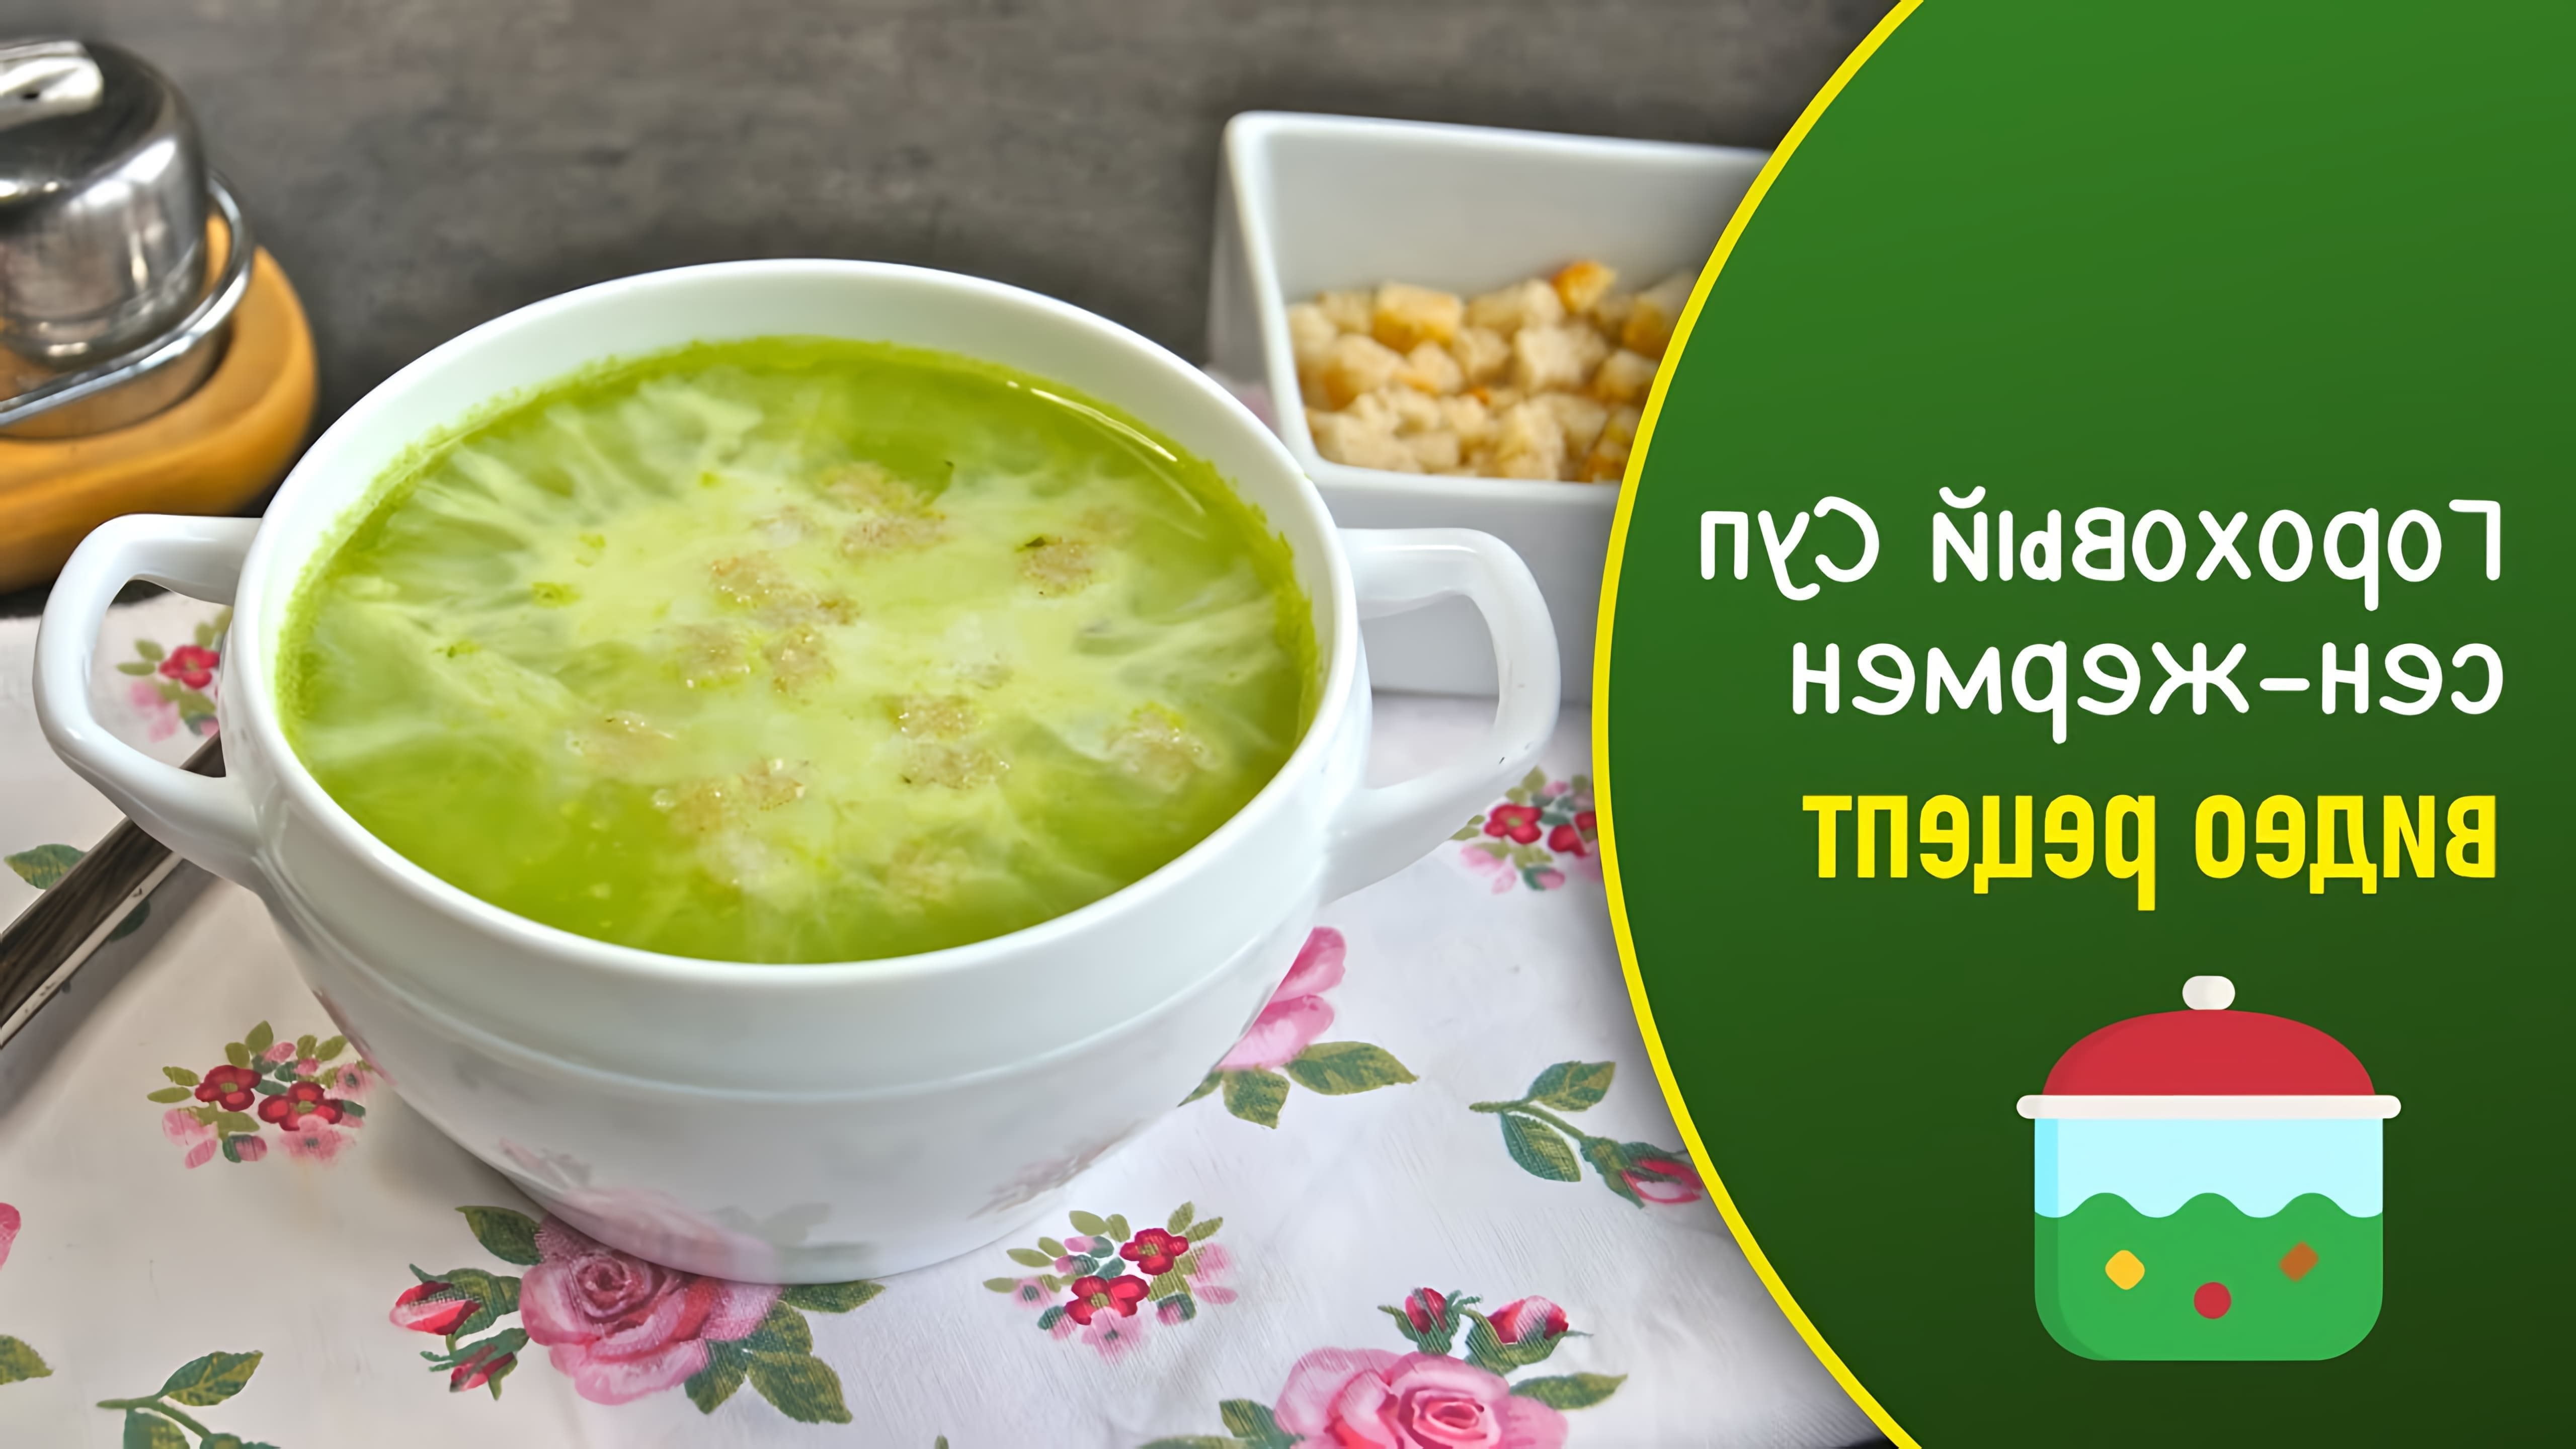 Суп "Сен-Жермен" - это вкусный и питательный зеленый гороховый суп на мясном бульоне